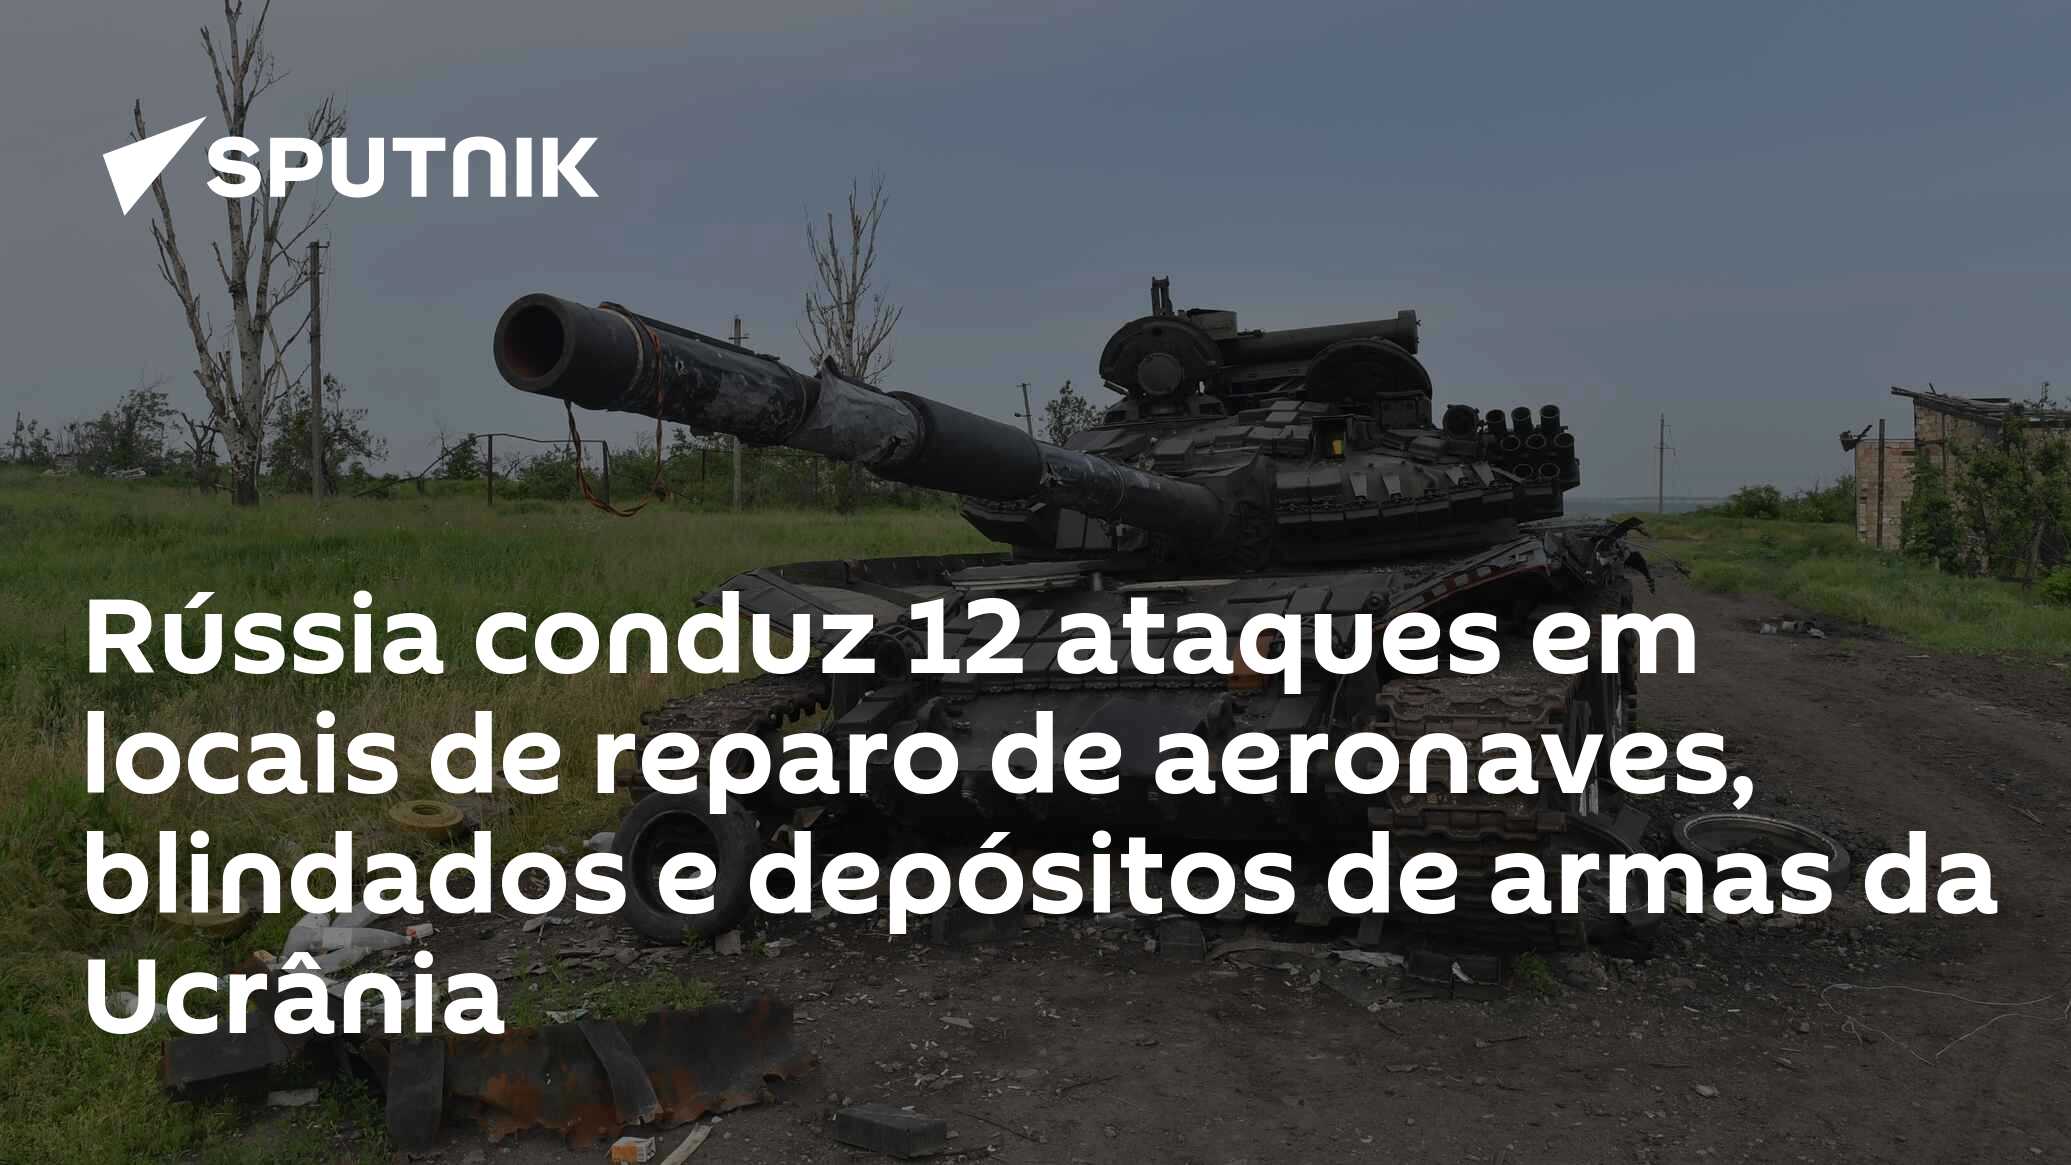 Rússia fica em 1º lugar em campeonato mundial de tiro militar realizado no  Rio de Janeiro (VÍDEO) - 02.10.2023, Sputnik Brasil